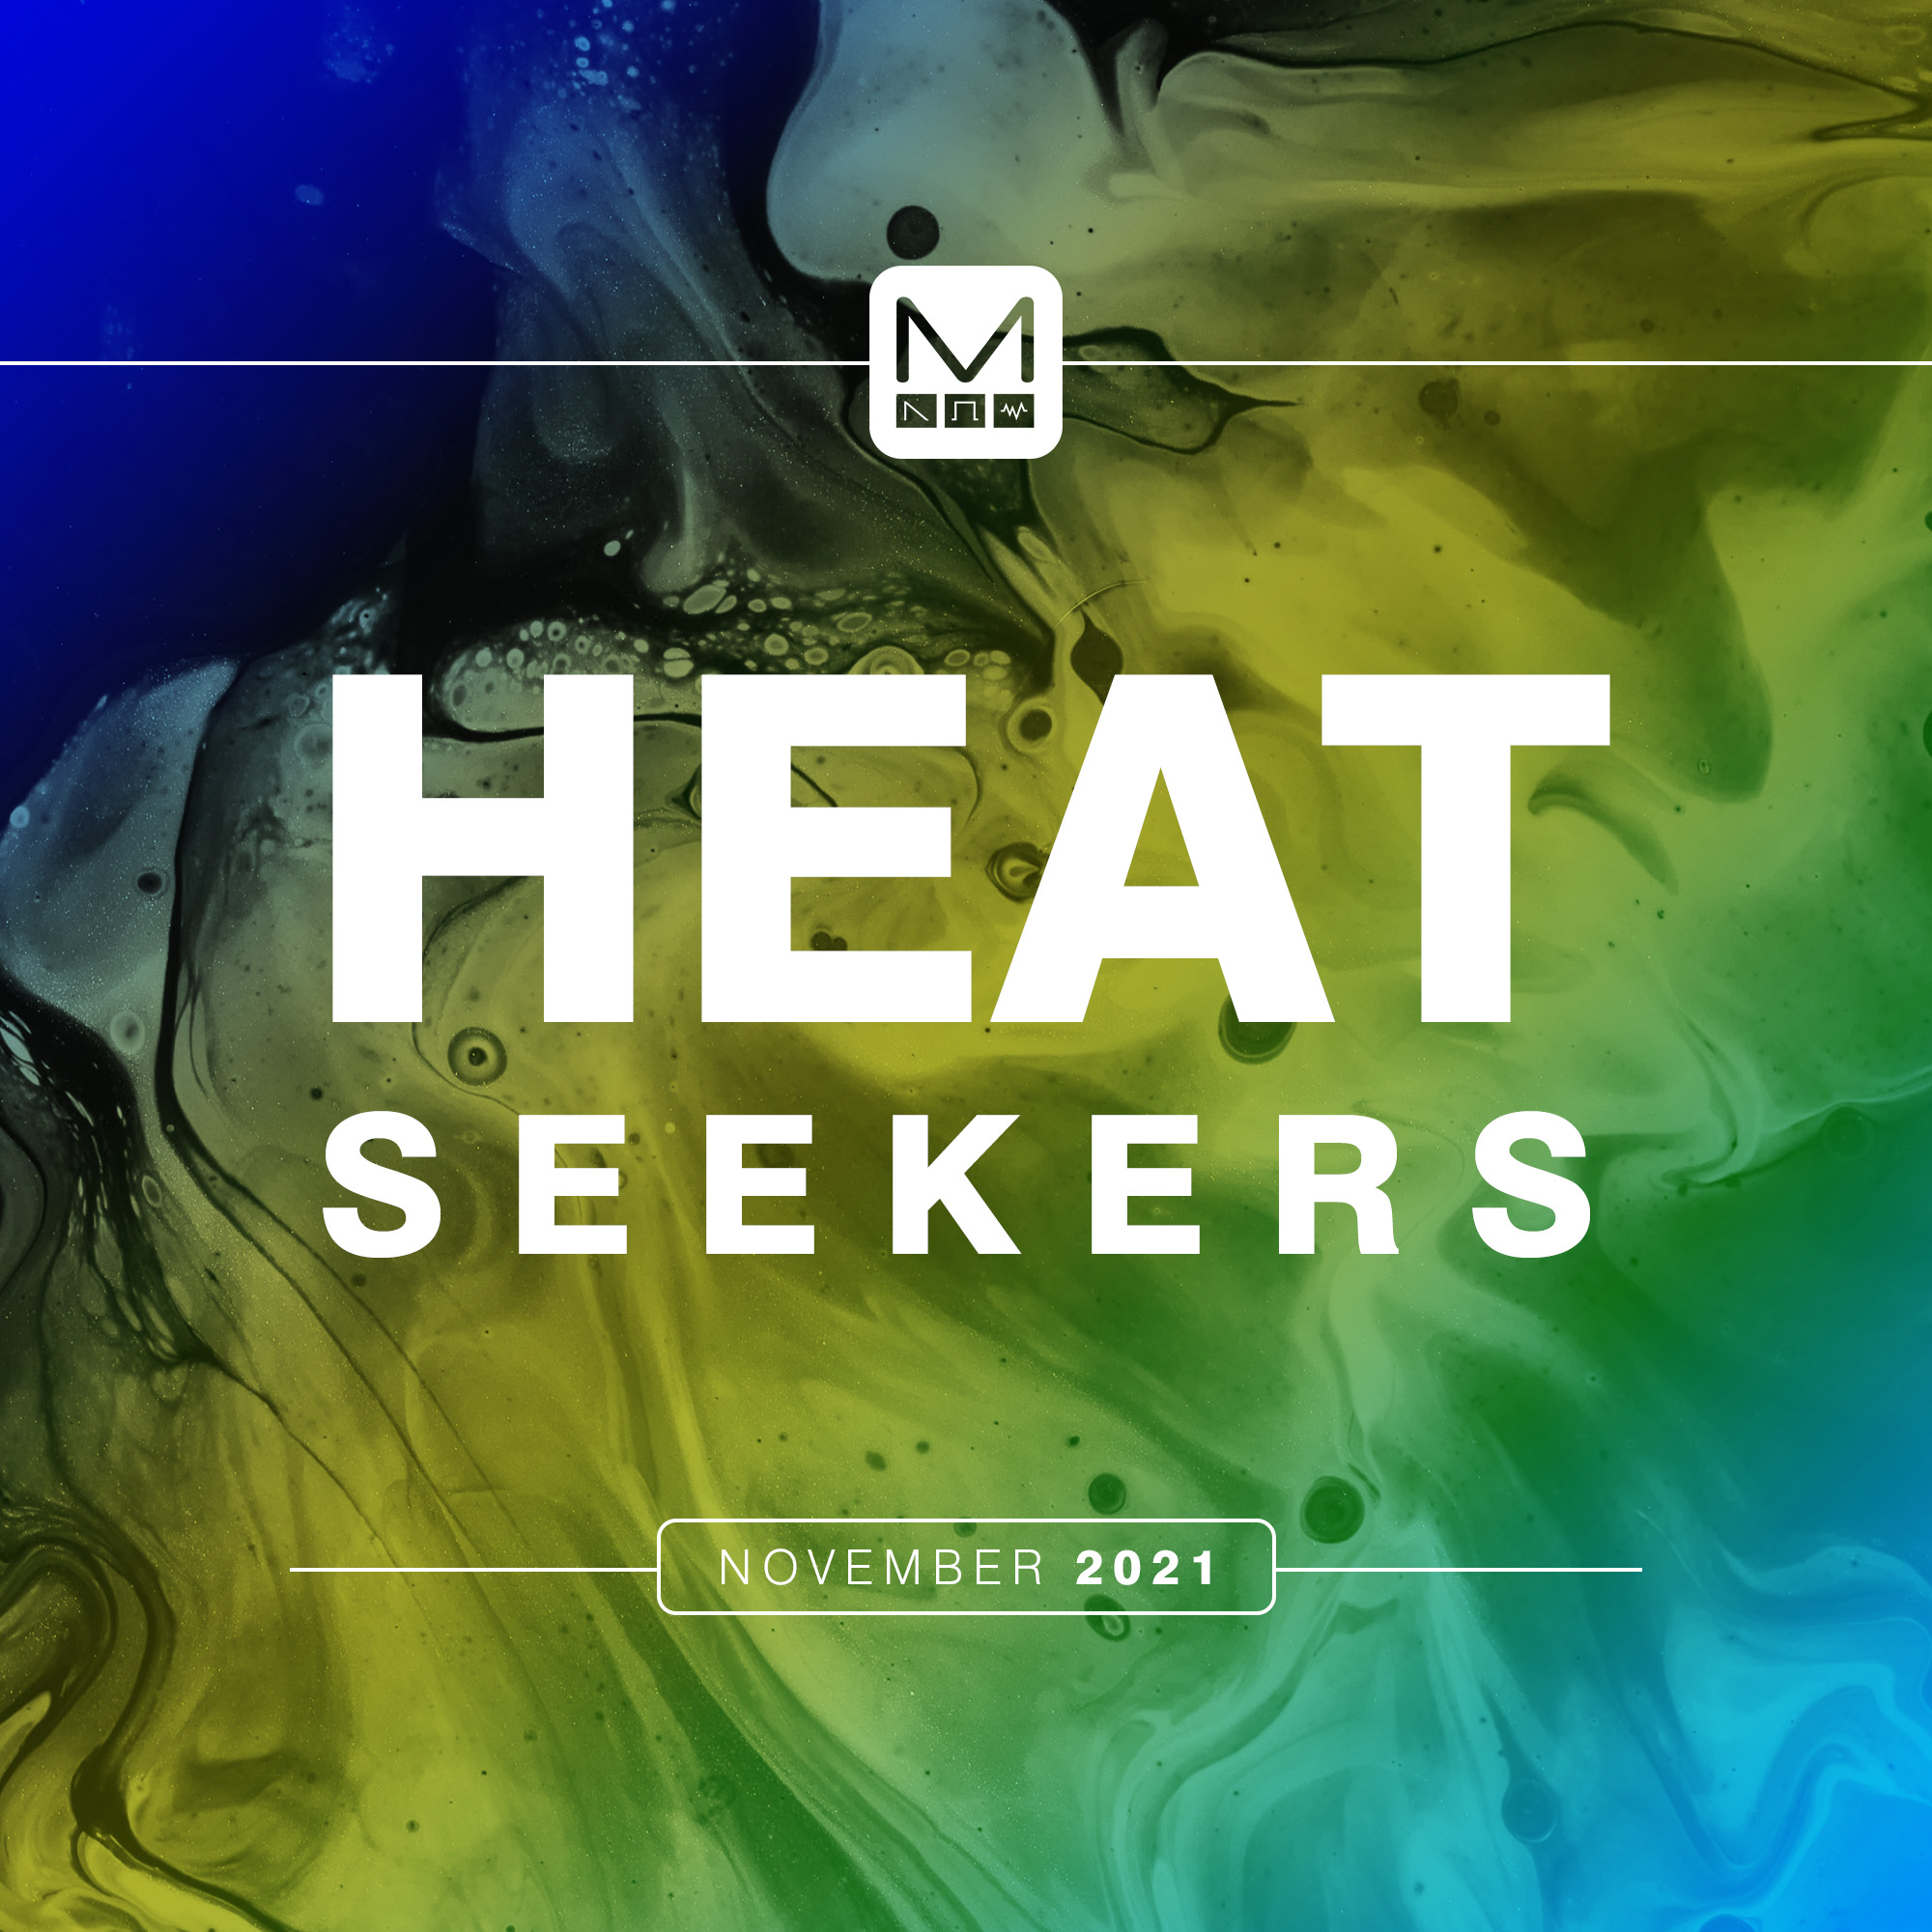 heat-seekers-11-21